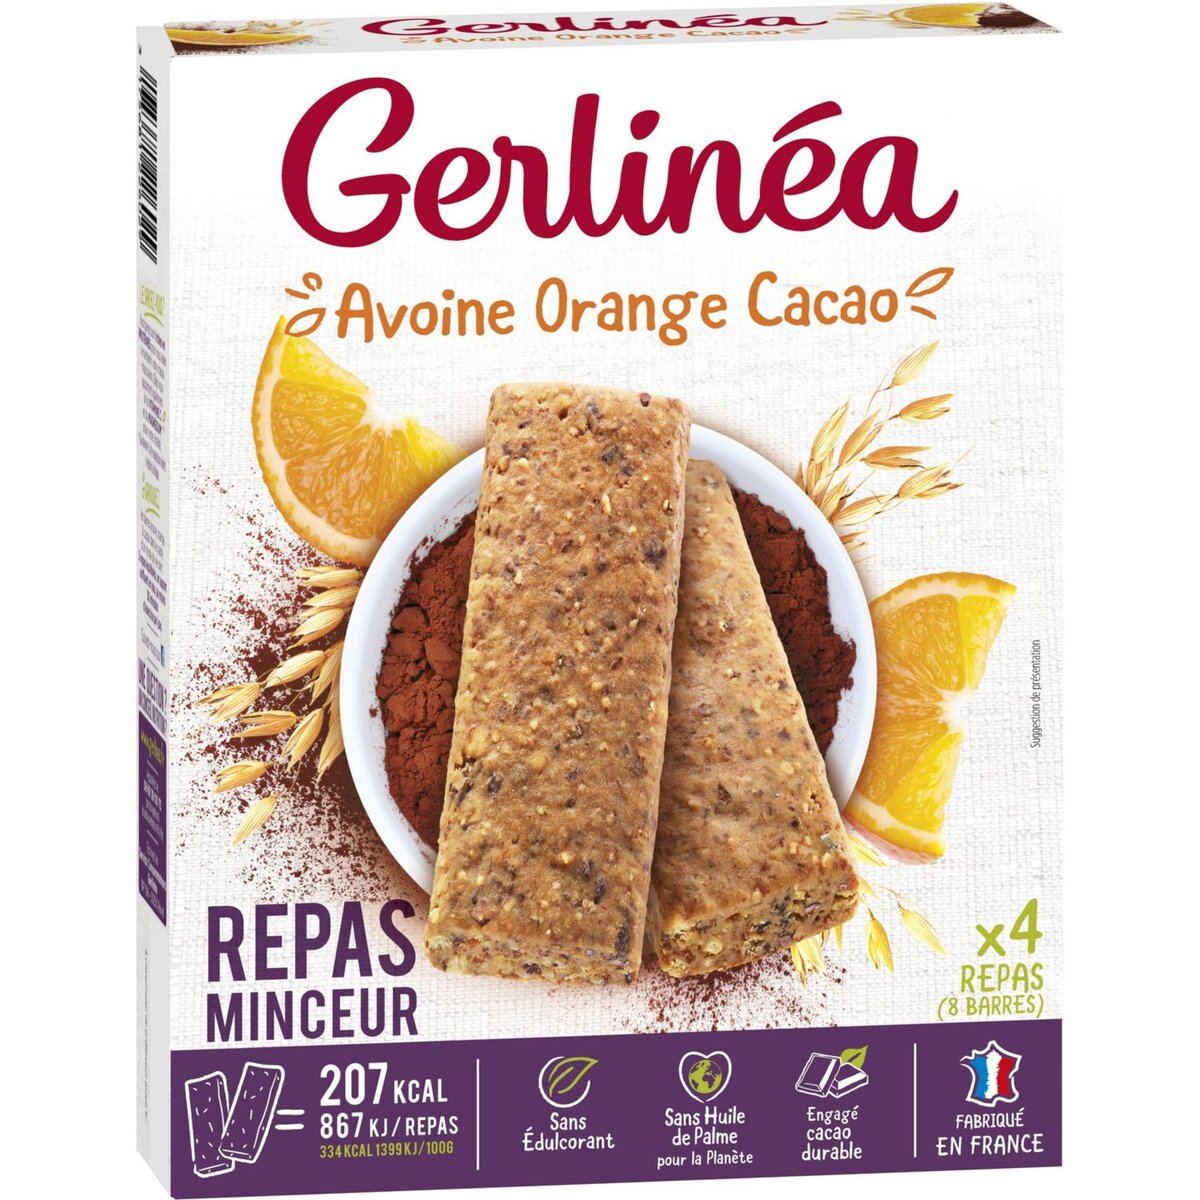 GERLINEA Repas minceur avoine orange cacao riches en protéines 8x31g 250g